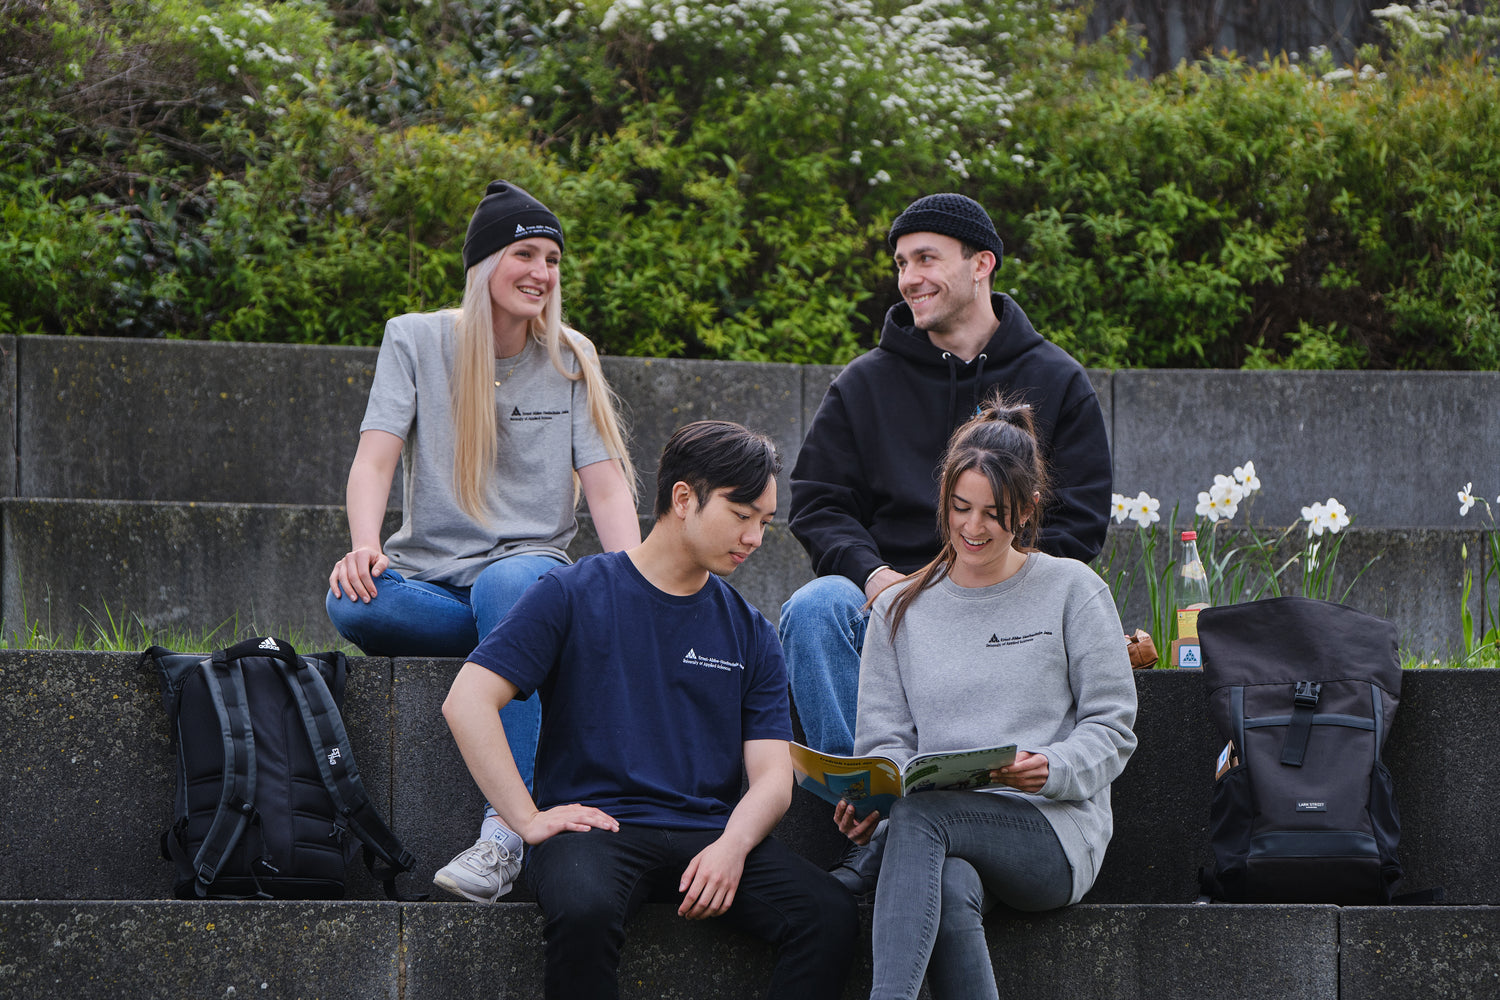 2 Studenten und 2 Studentinnen sitzen auf Steinstufen und tragen Kleidung von StudyMerch, die mit dem Logo der Ernst-Abbe-Hochschule veredelt ist. Zu sehen sind ein graues und ein dunkelblaues T-Shirt, ein grauer Sweater und ein schwarzer Hoodie.